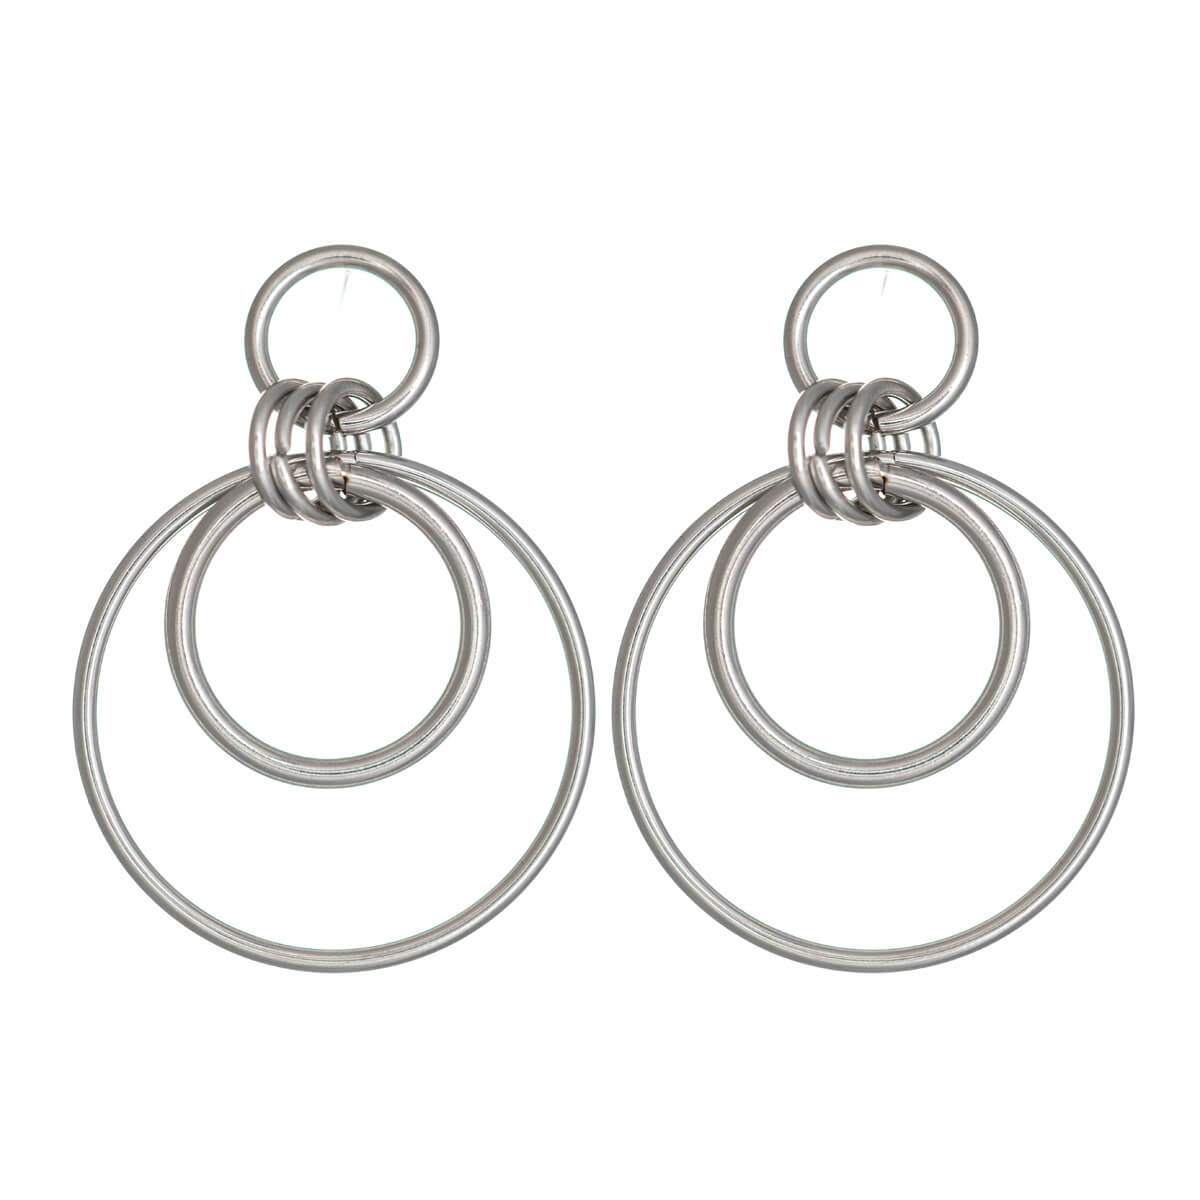 Steel rings hanging earrings (Steel 316L)